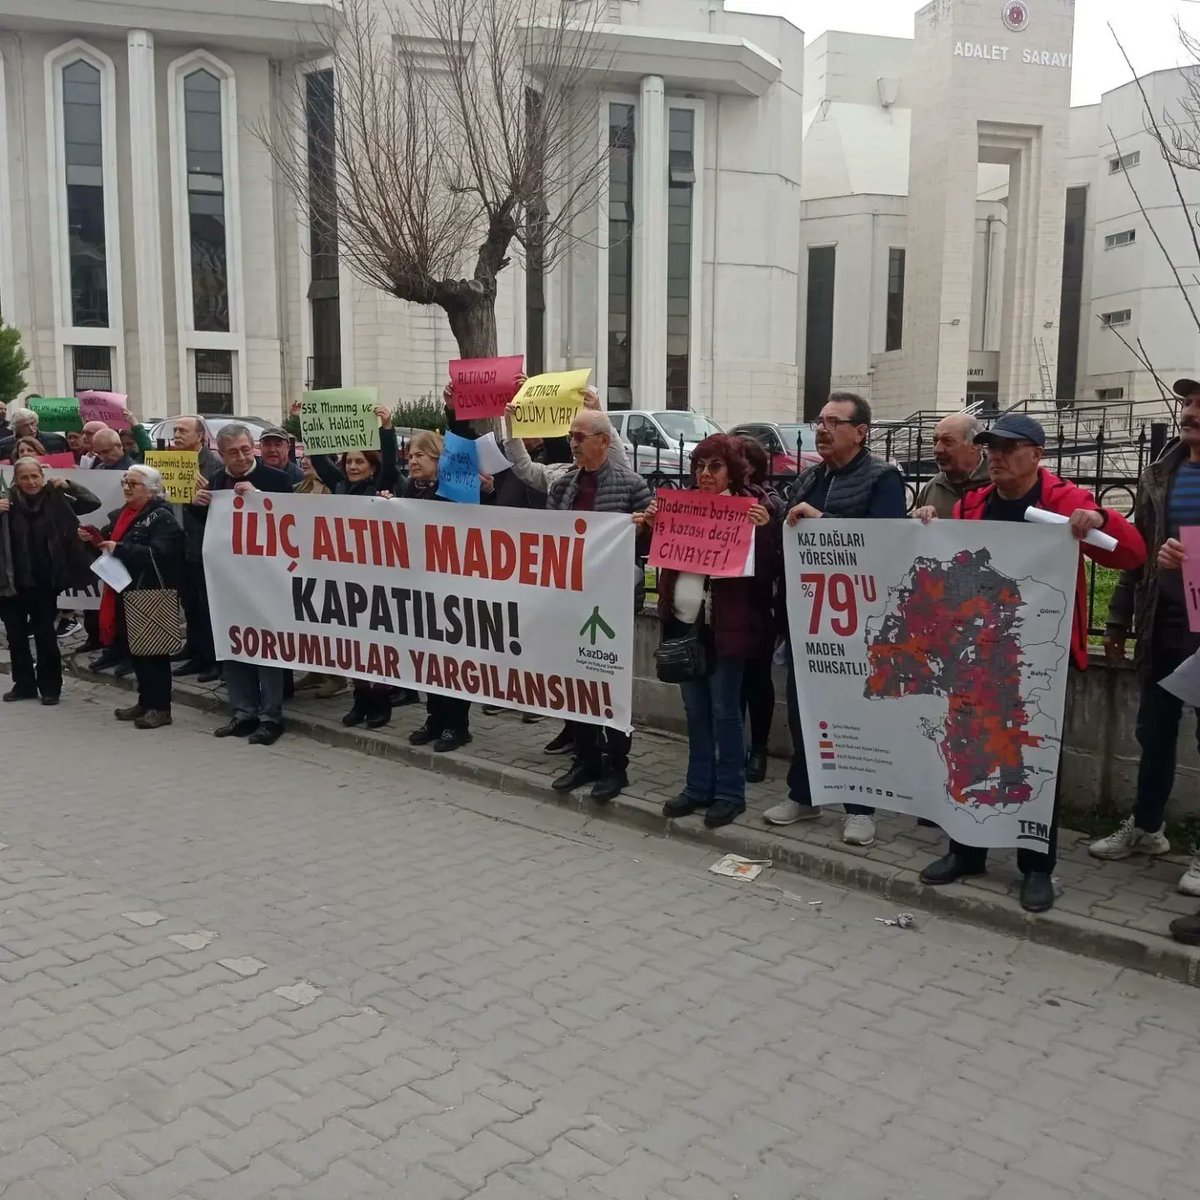 İliç Madeni Kapatılsın! Sorumlular Acilen Yargılansın! Bugün Türkiye'nin her yerinde yaşam savunucuları İliç maden felaketinin sorumlularının yargılanması için suç duyurusunda bulundu. Biz de derneğimizin çağrısı ile Edremit Demokrasi Platformu +